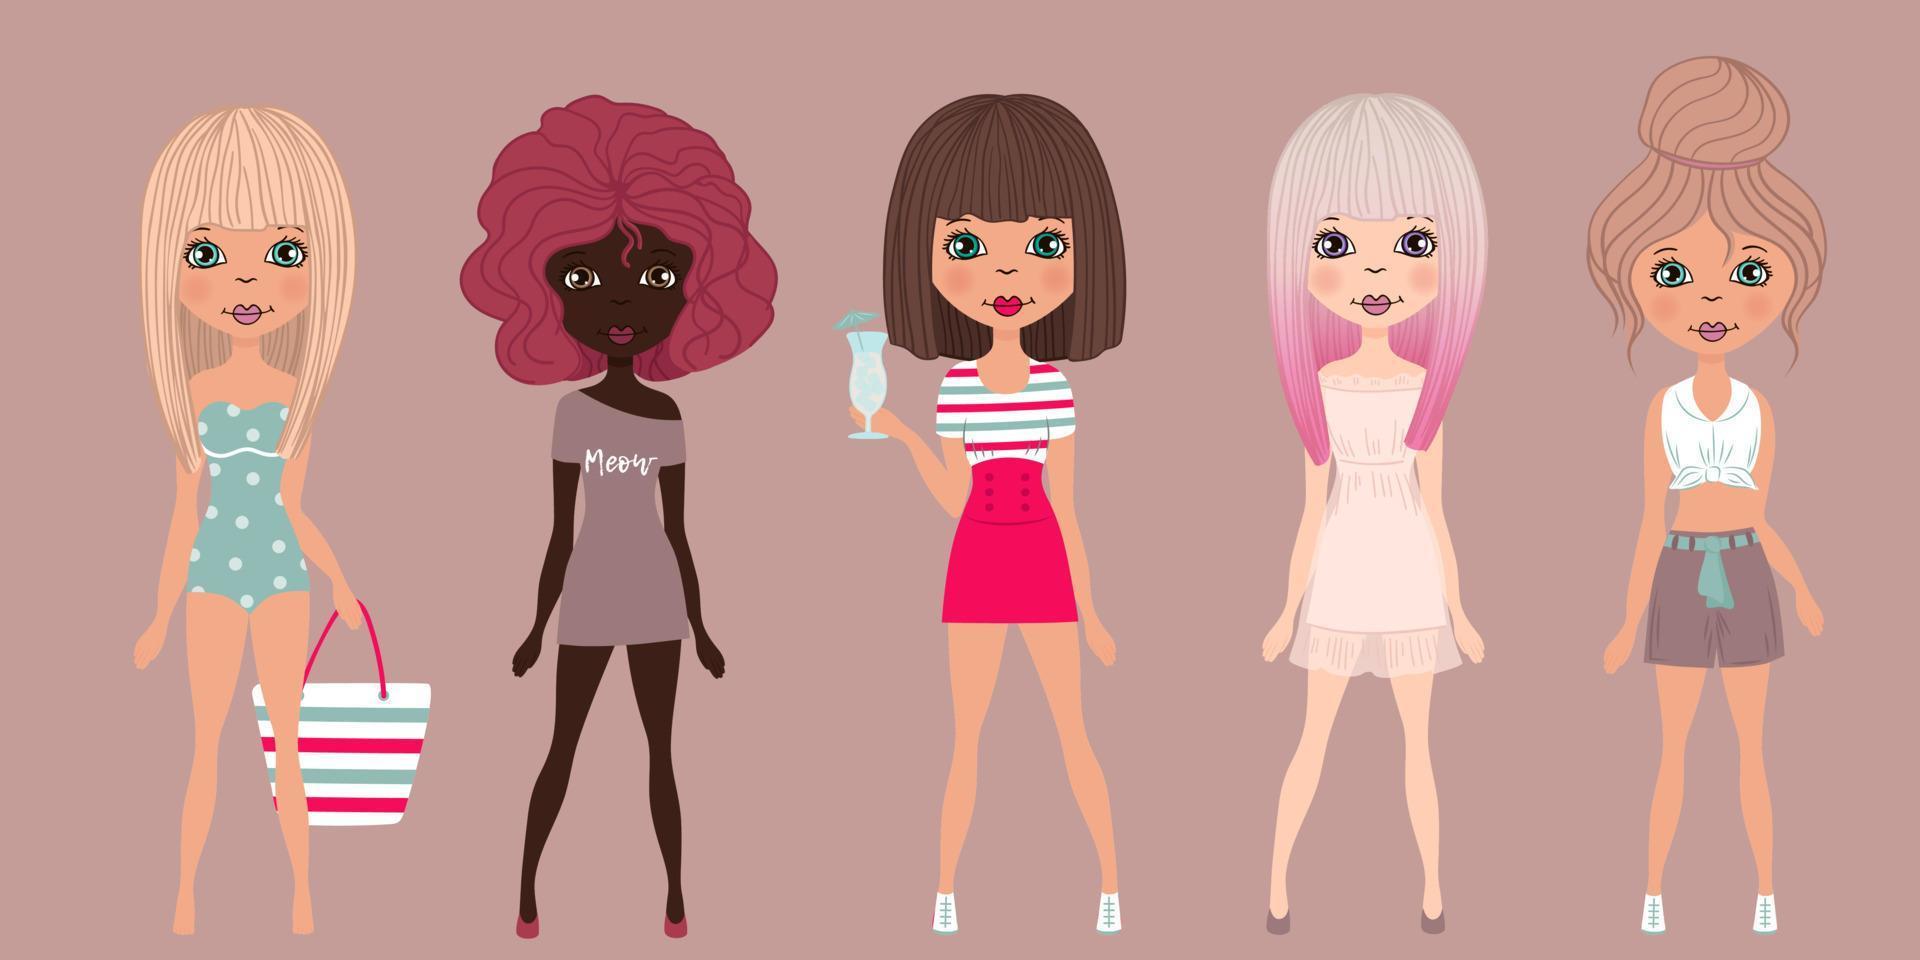 cinco vectores hermosas lindas chicas de moda de verano de dibujos animados. traje de aspecto de verano. diferencia el tono de la piel, el cabello y el uso